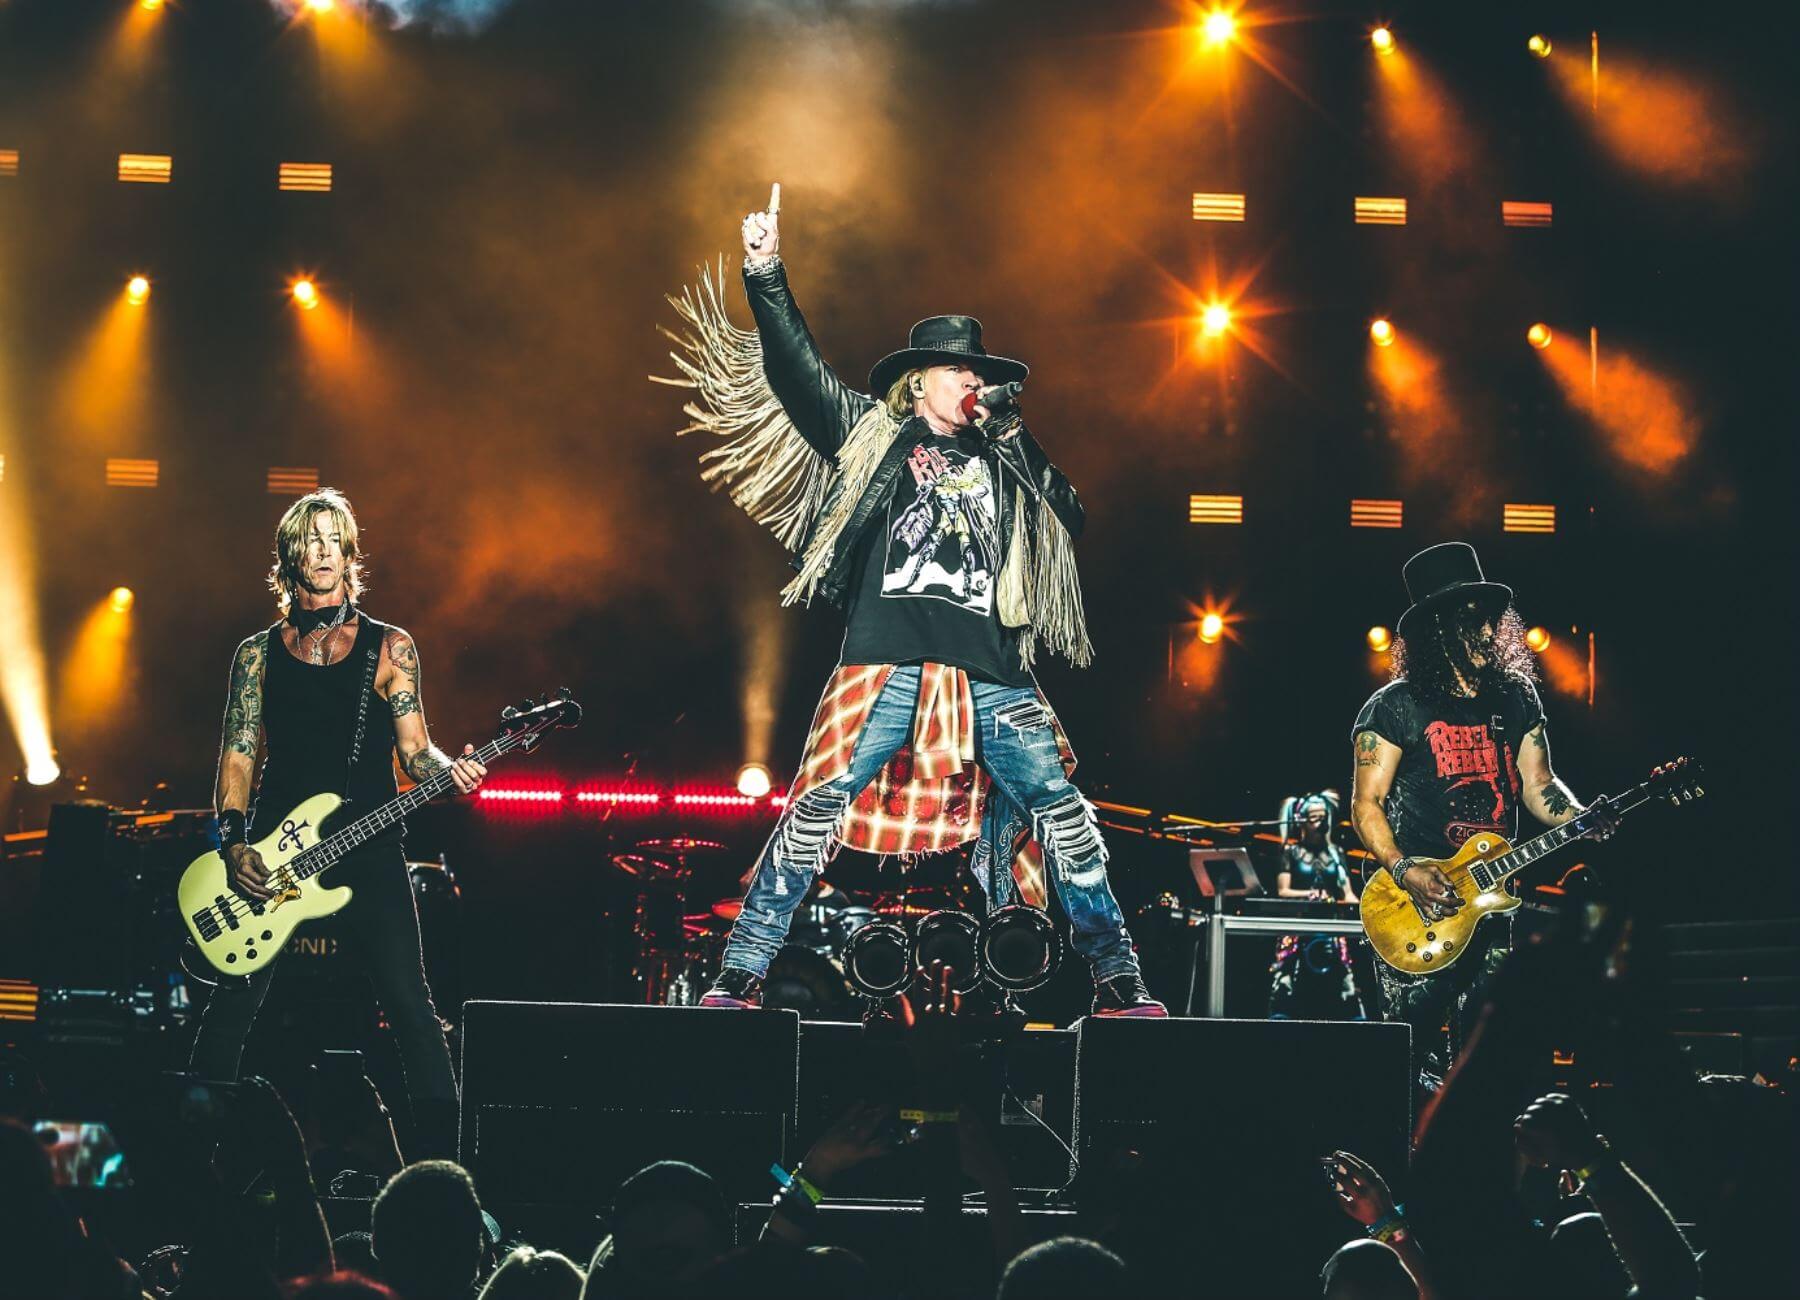 “Suena épico”: ¡Guns N’Roses trabaja arduamente haciendo nueva música en esta cuarentena!